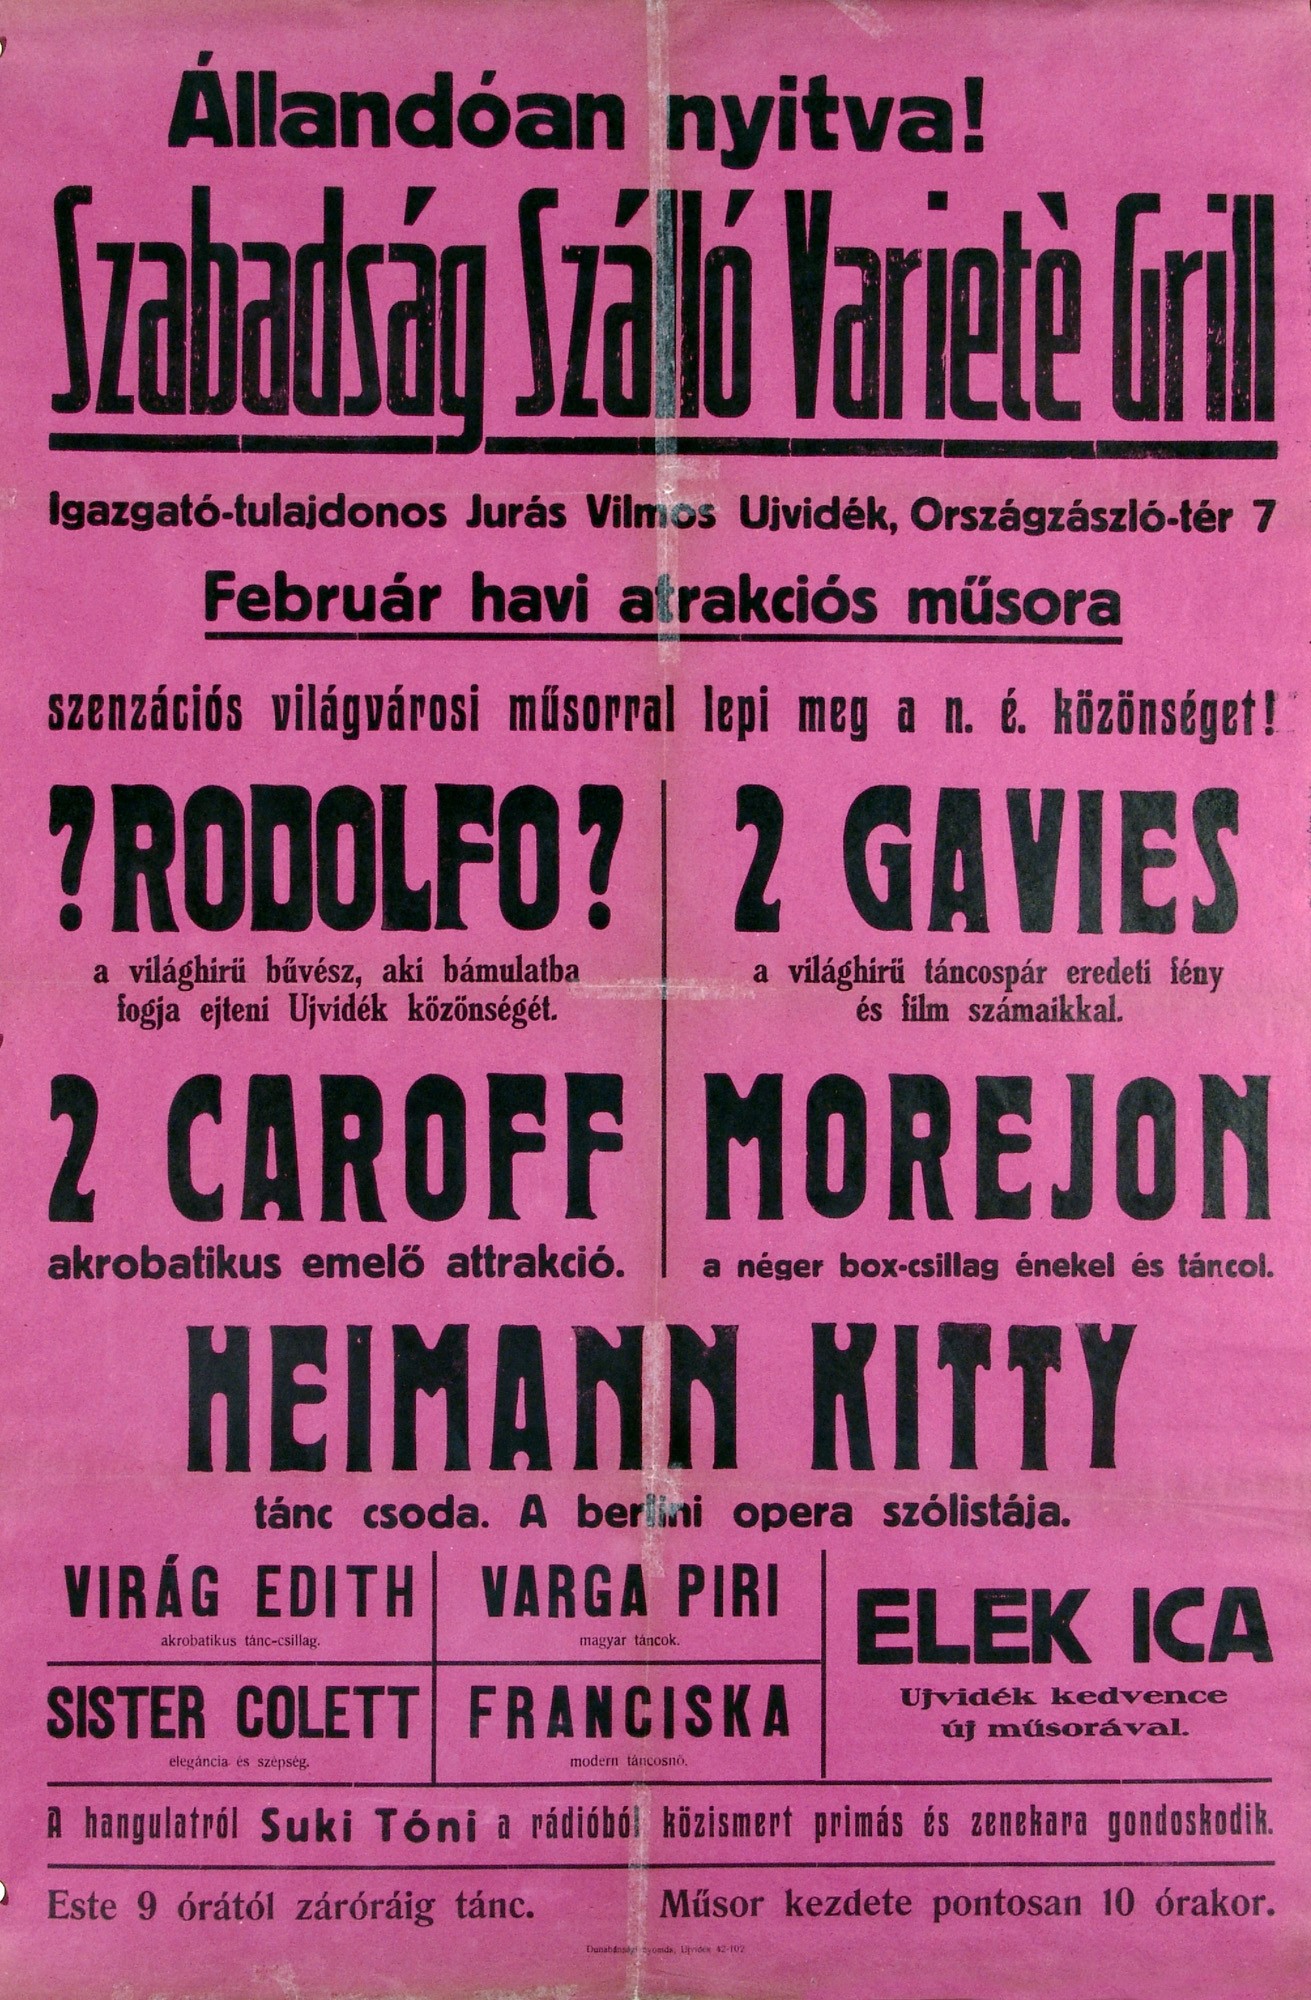 Szabadság Szálló Varieté Grill műsorhirdető plakát (Kecskeméti Katona József Múzeum CC BY-NC-SA)